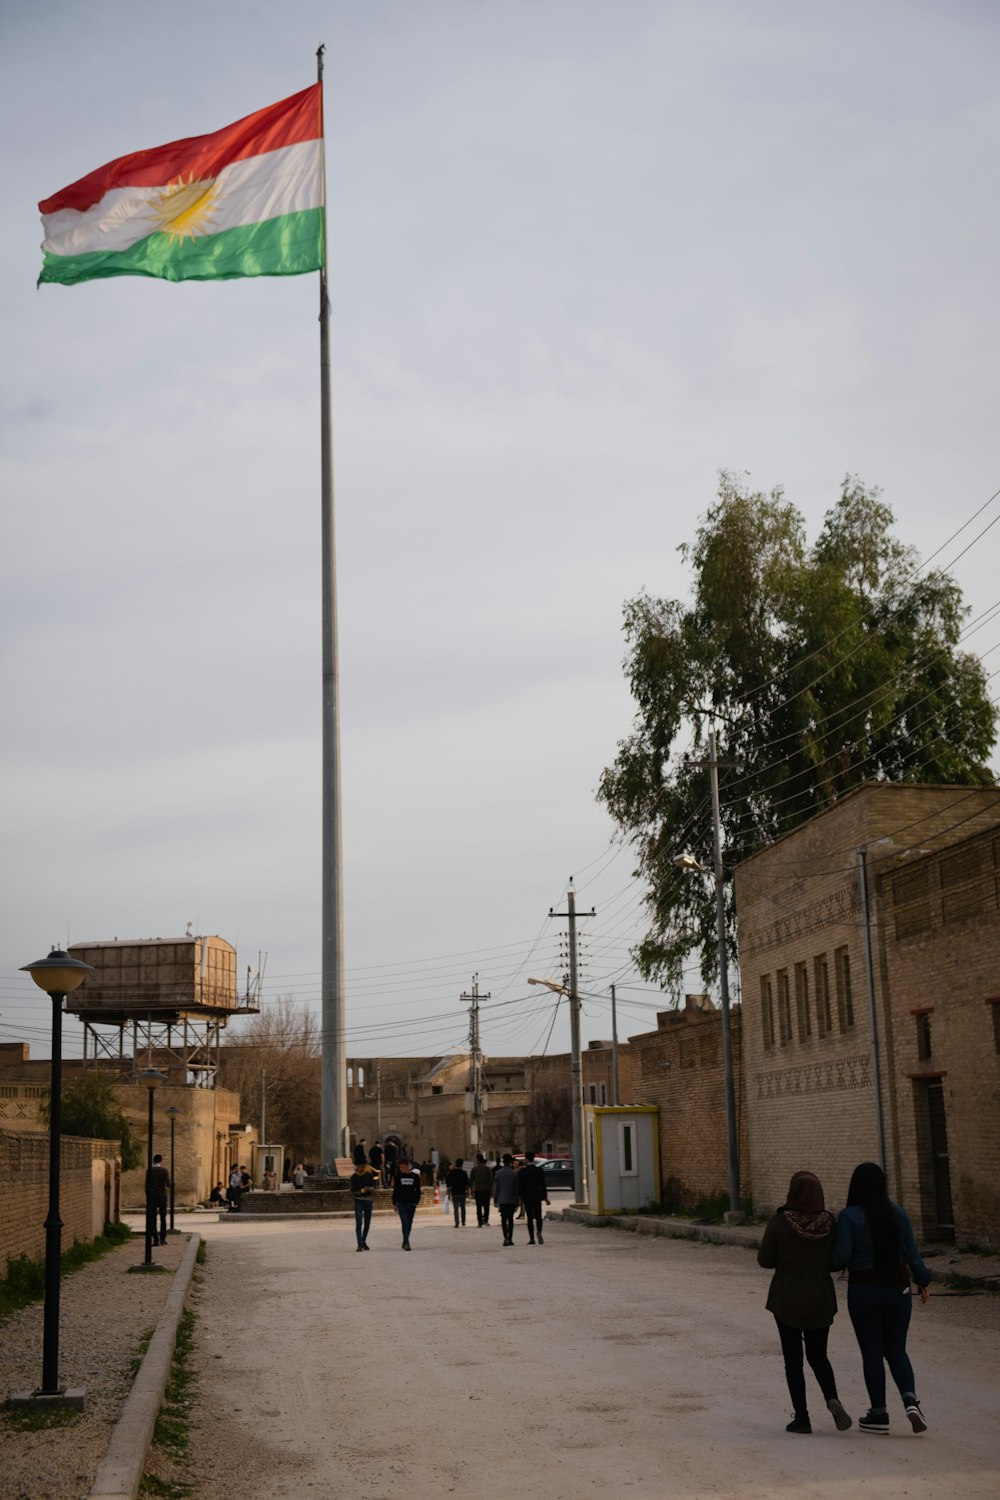 Bandera verde en el mástil cerca del edificio durante el día